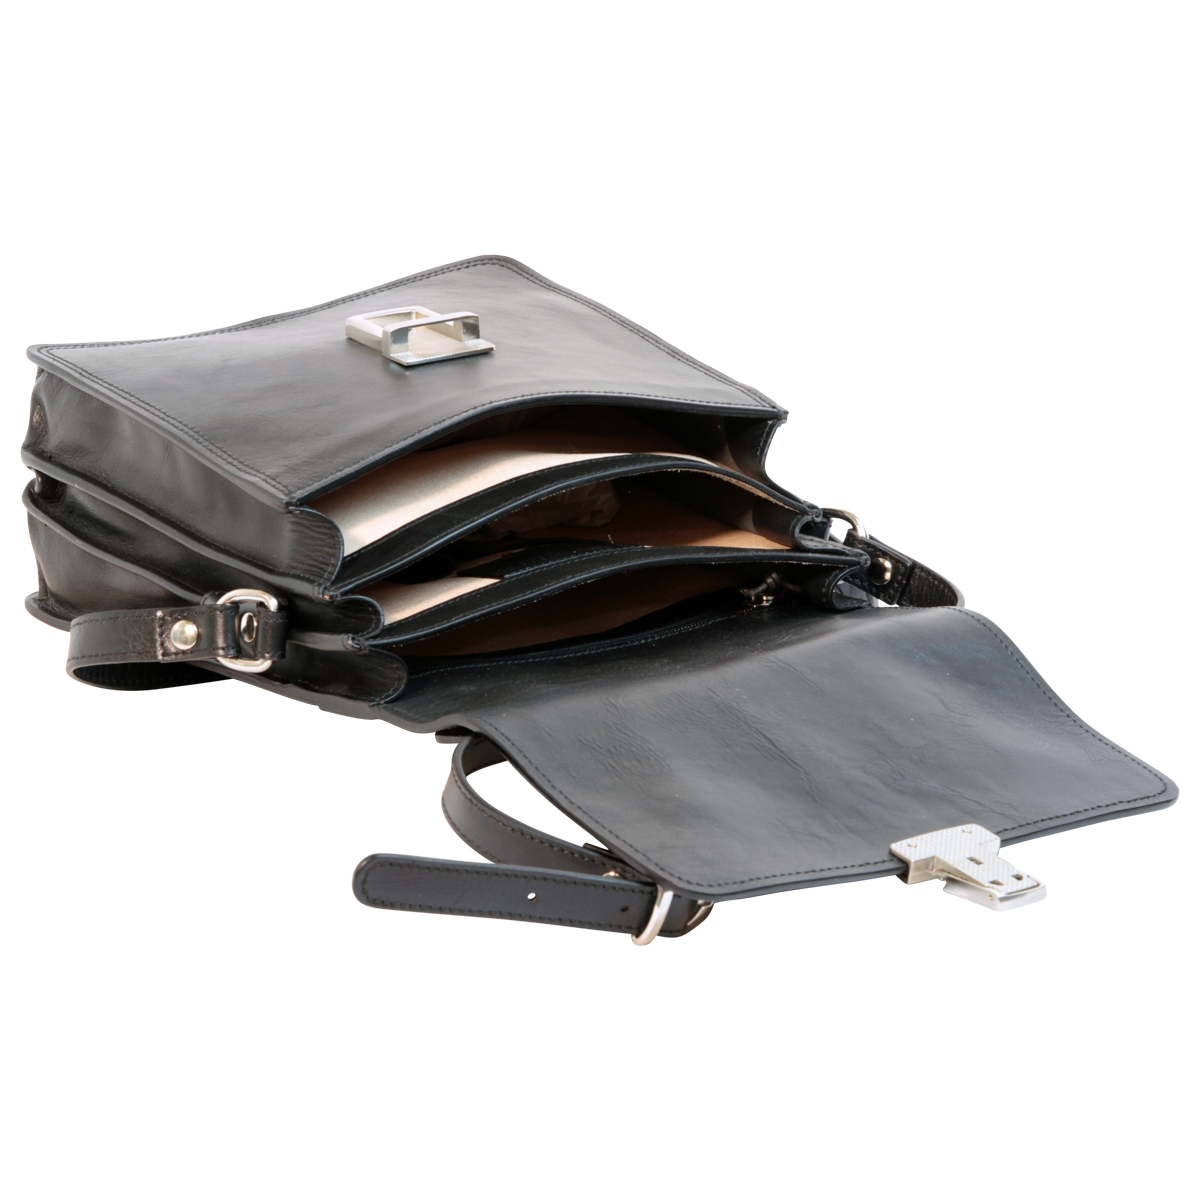 Leather Cross Body Satchel Bag - Black | 056589NE UK | Old Angler Firenze